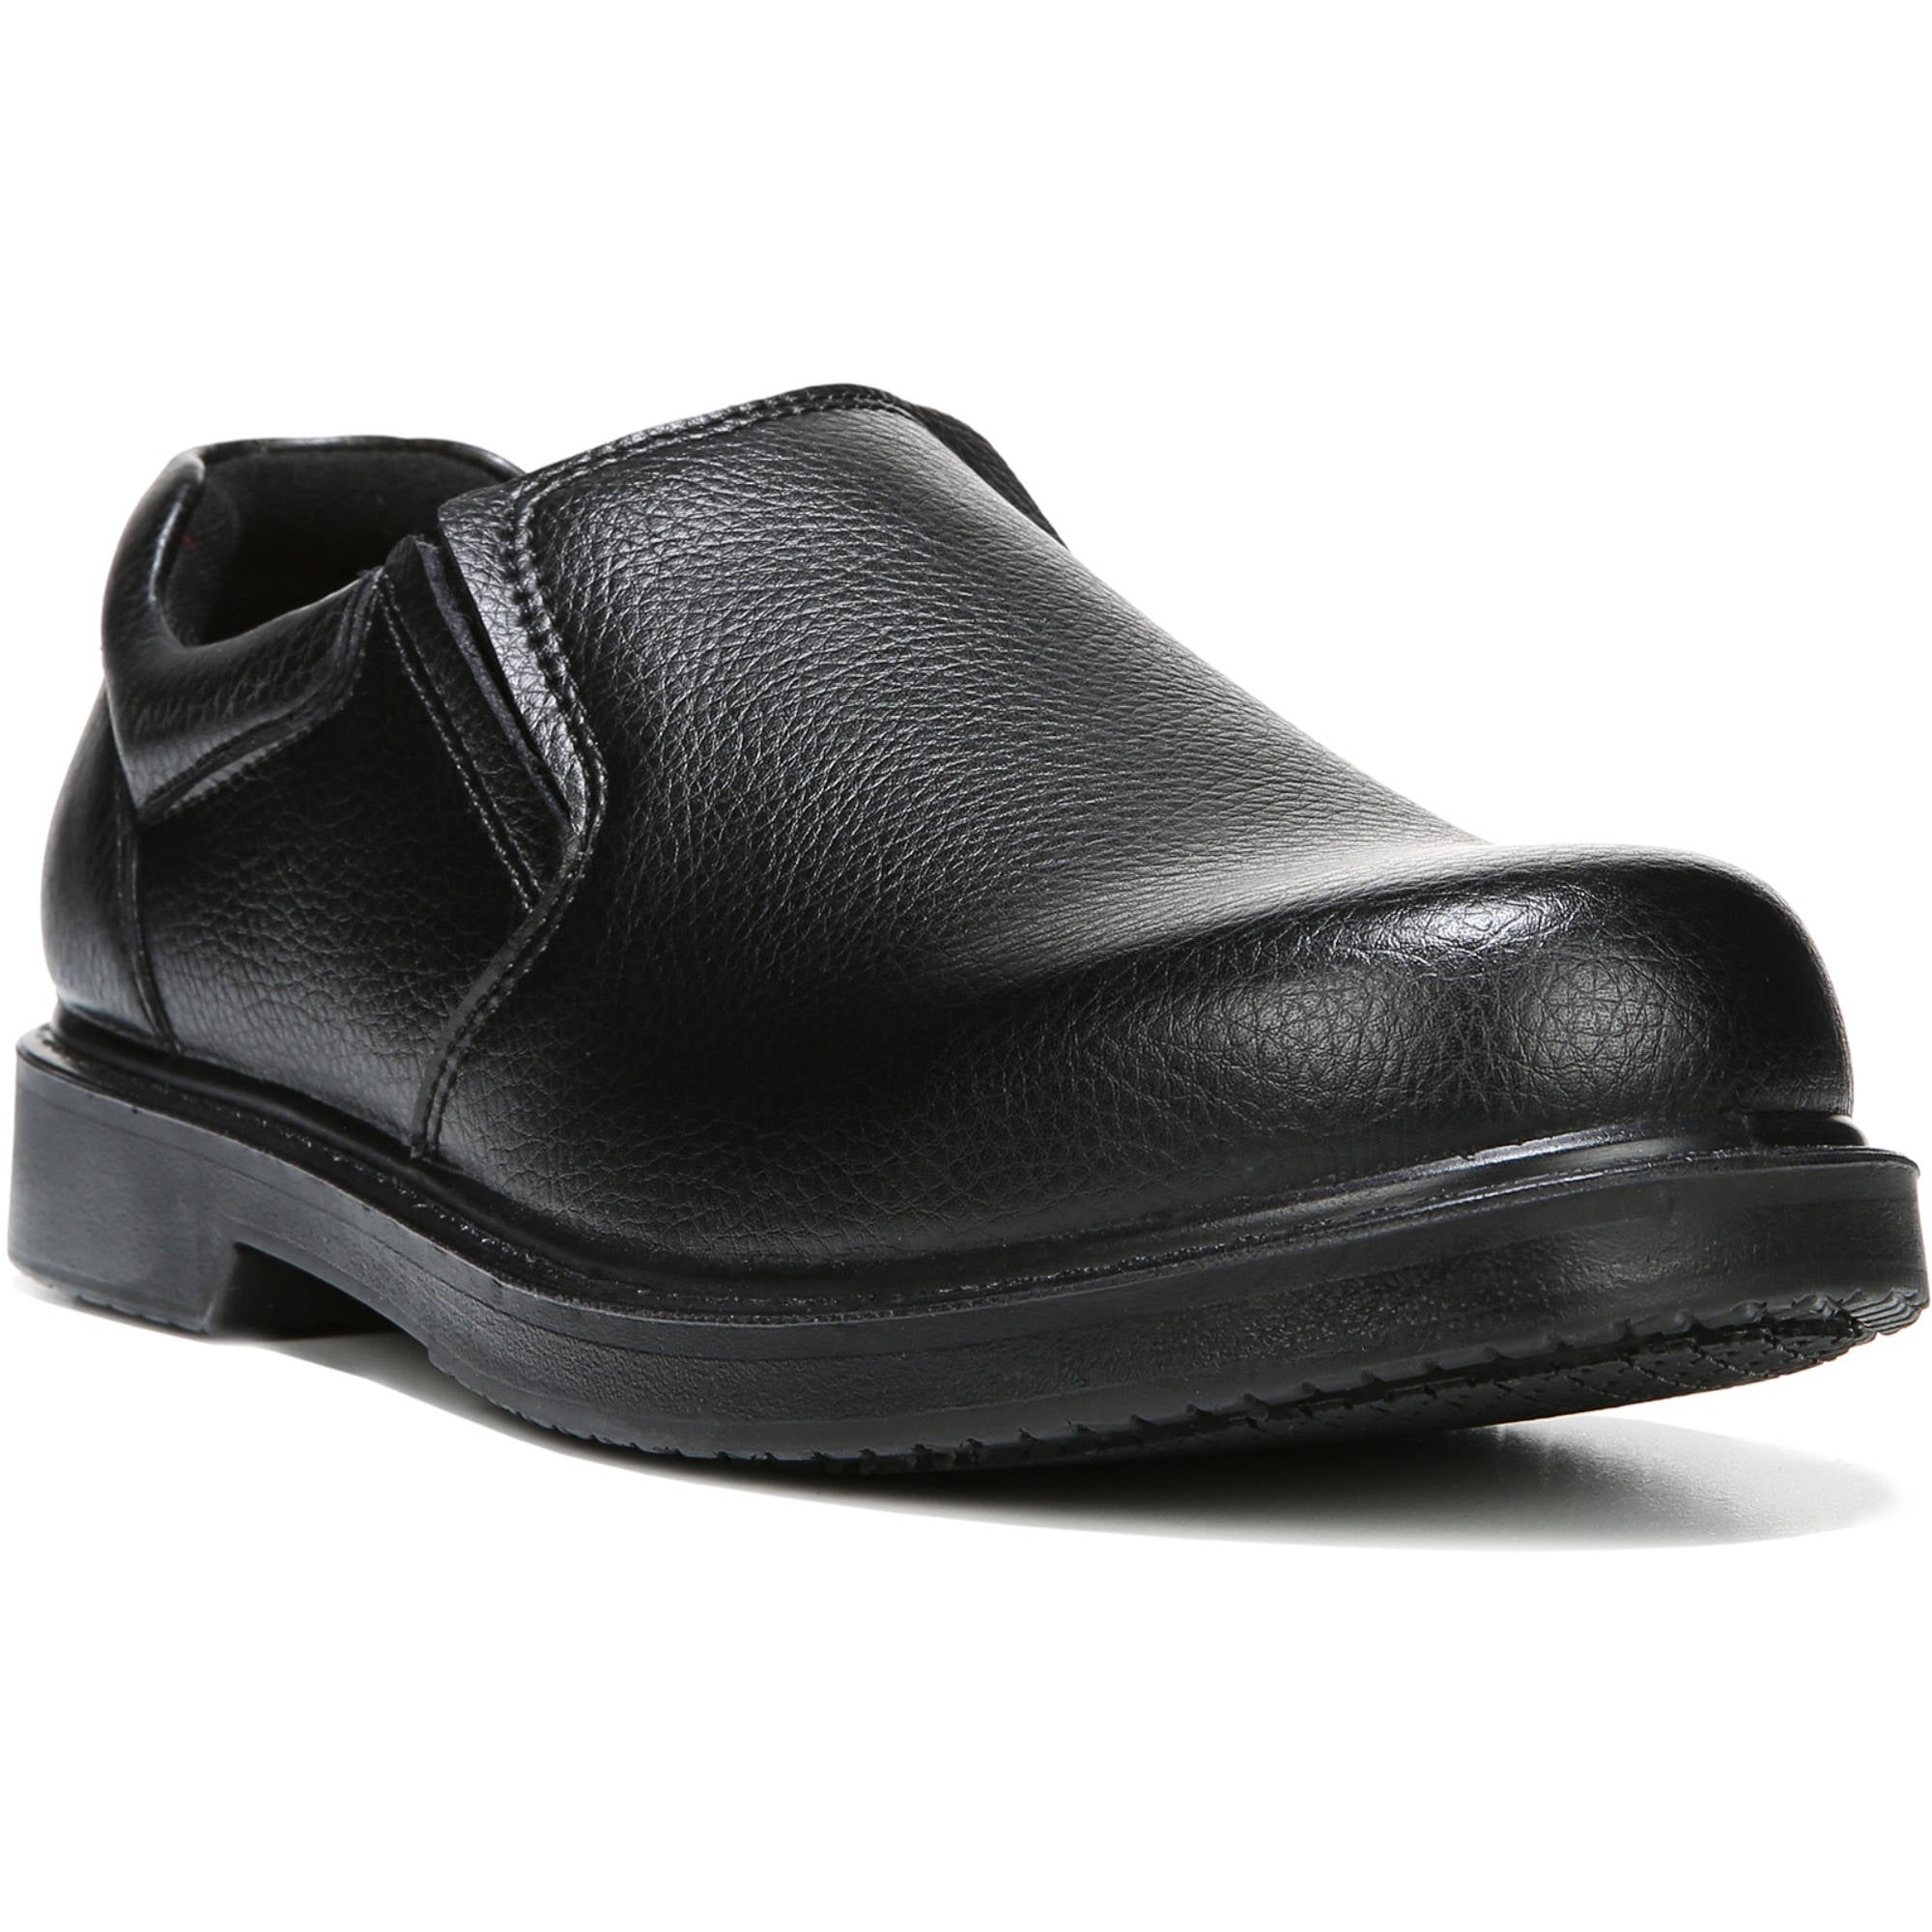 Dr. Scholl's Shoes - Dr. Scholl's Men's 